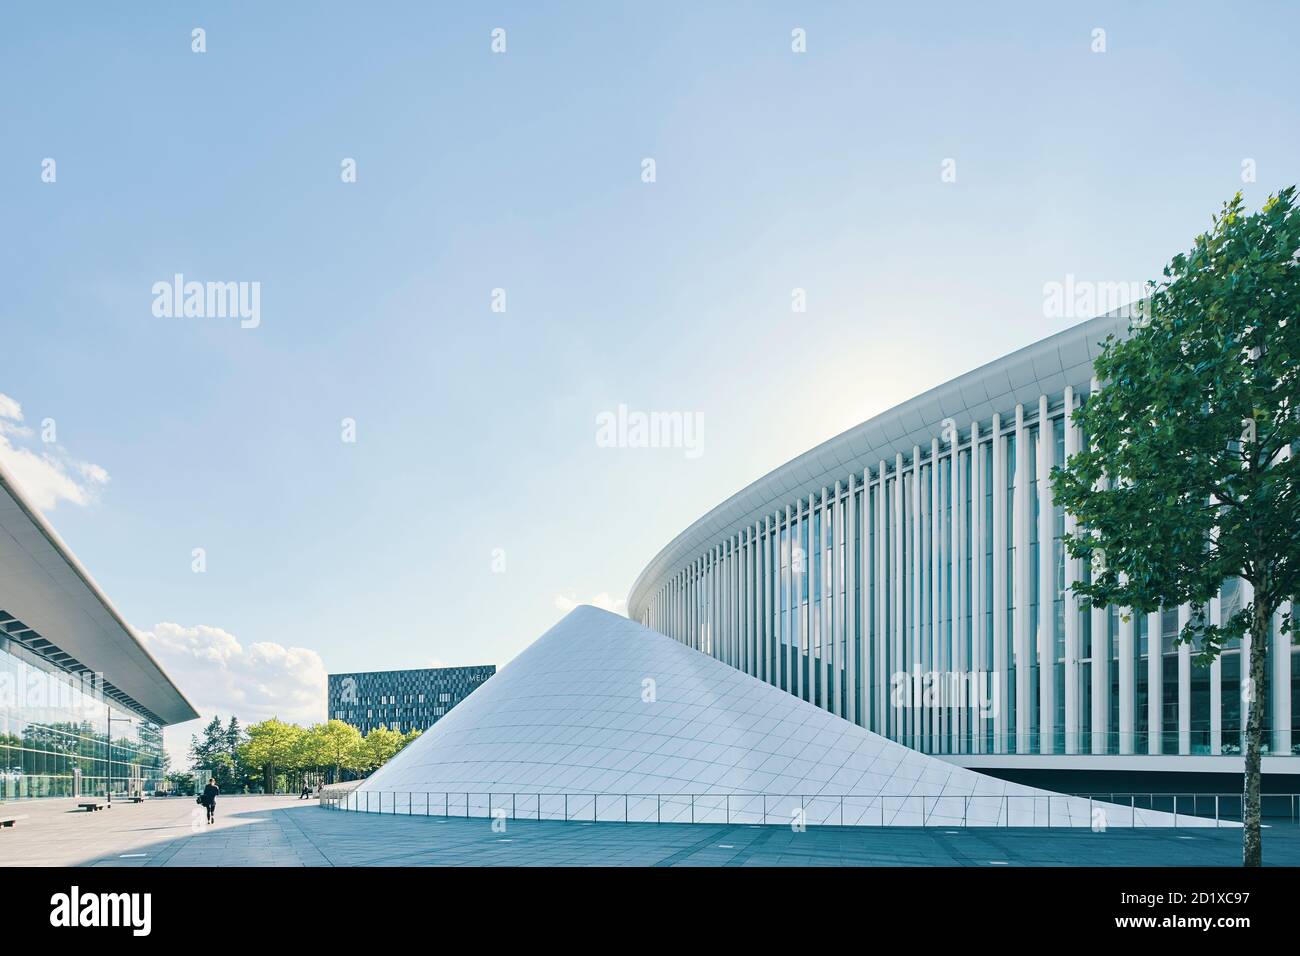 La Philharmonie en la meseta de Kirchberg, Luxemburgo, se encuentra en el centro de una plaza triangular rodeada por oficinas administrativas de la UE. Se compone de 823 columnas de acero blanco esbelto, dispuestas en tres o cuatro filas. Terminado en 2005. Foto de stock